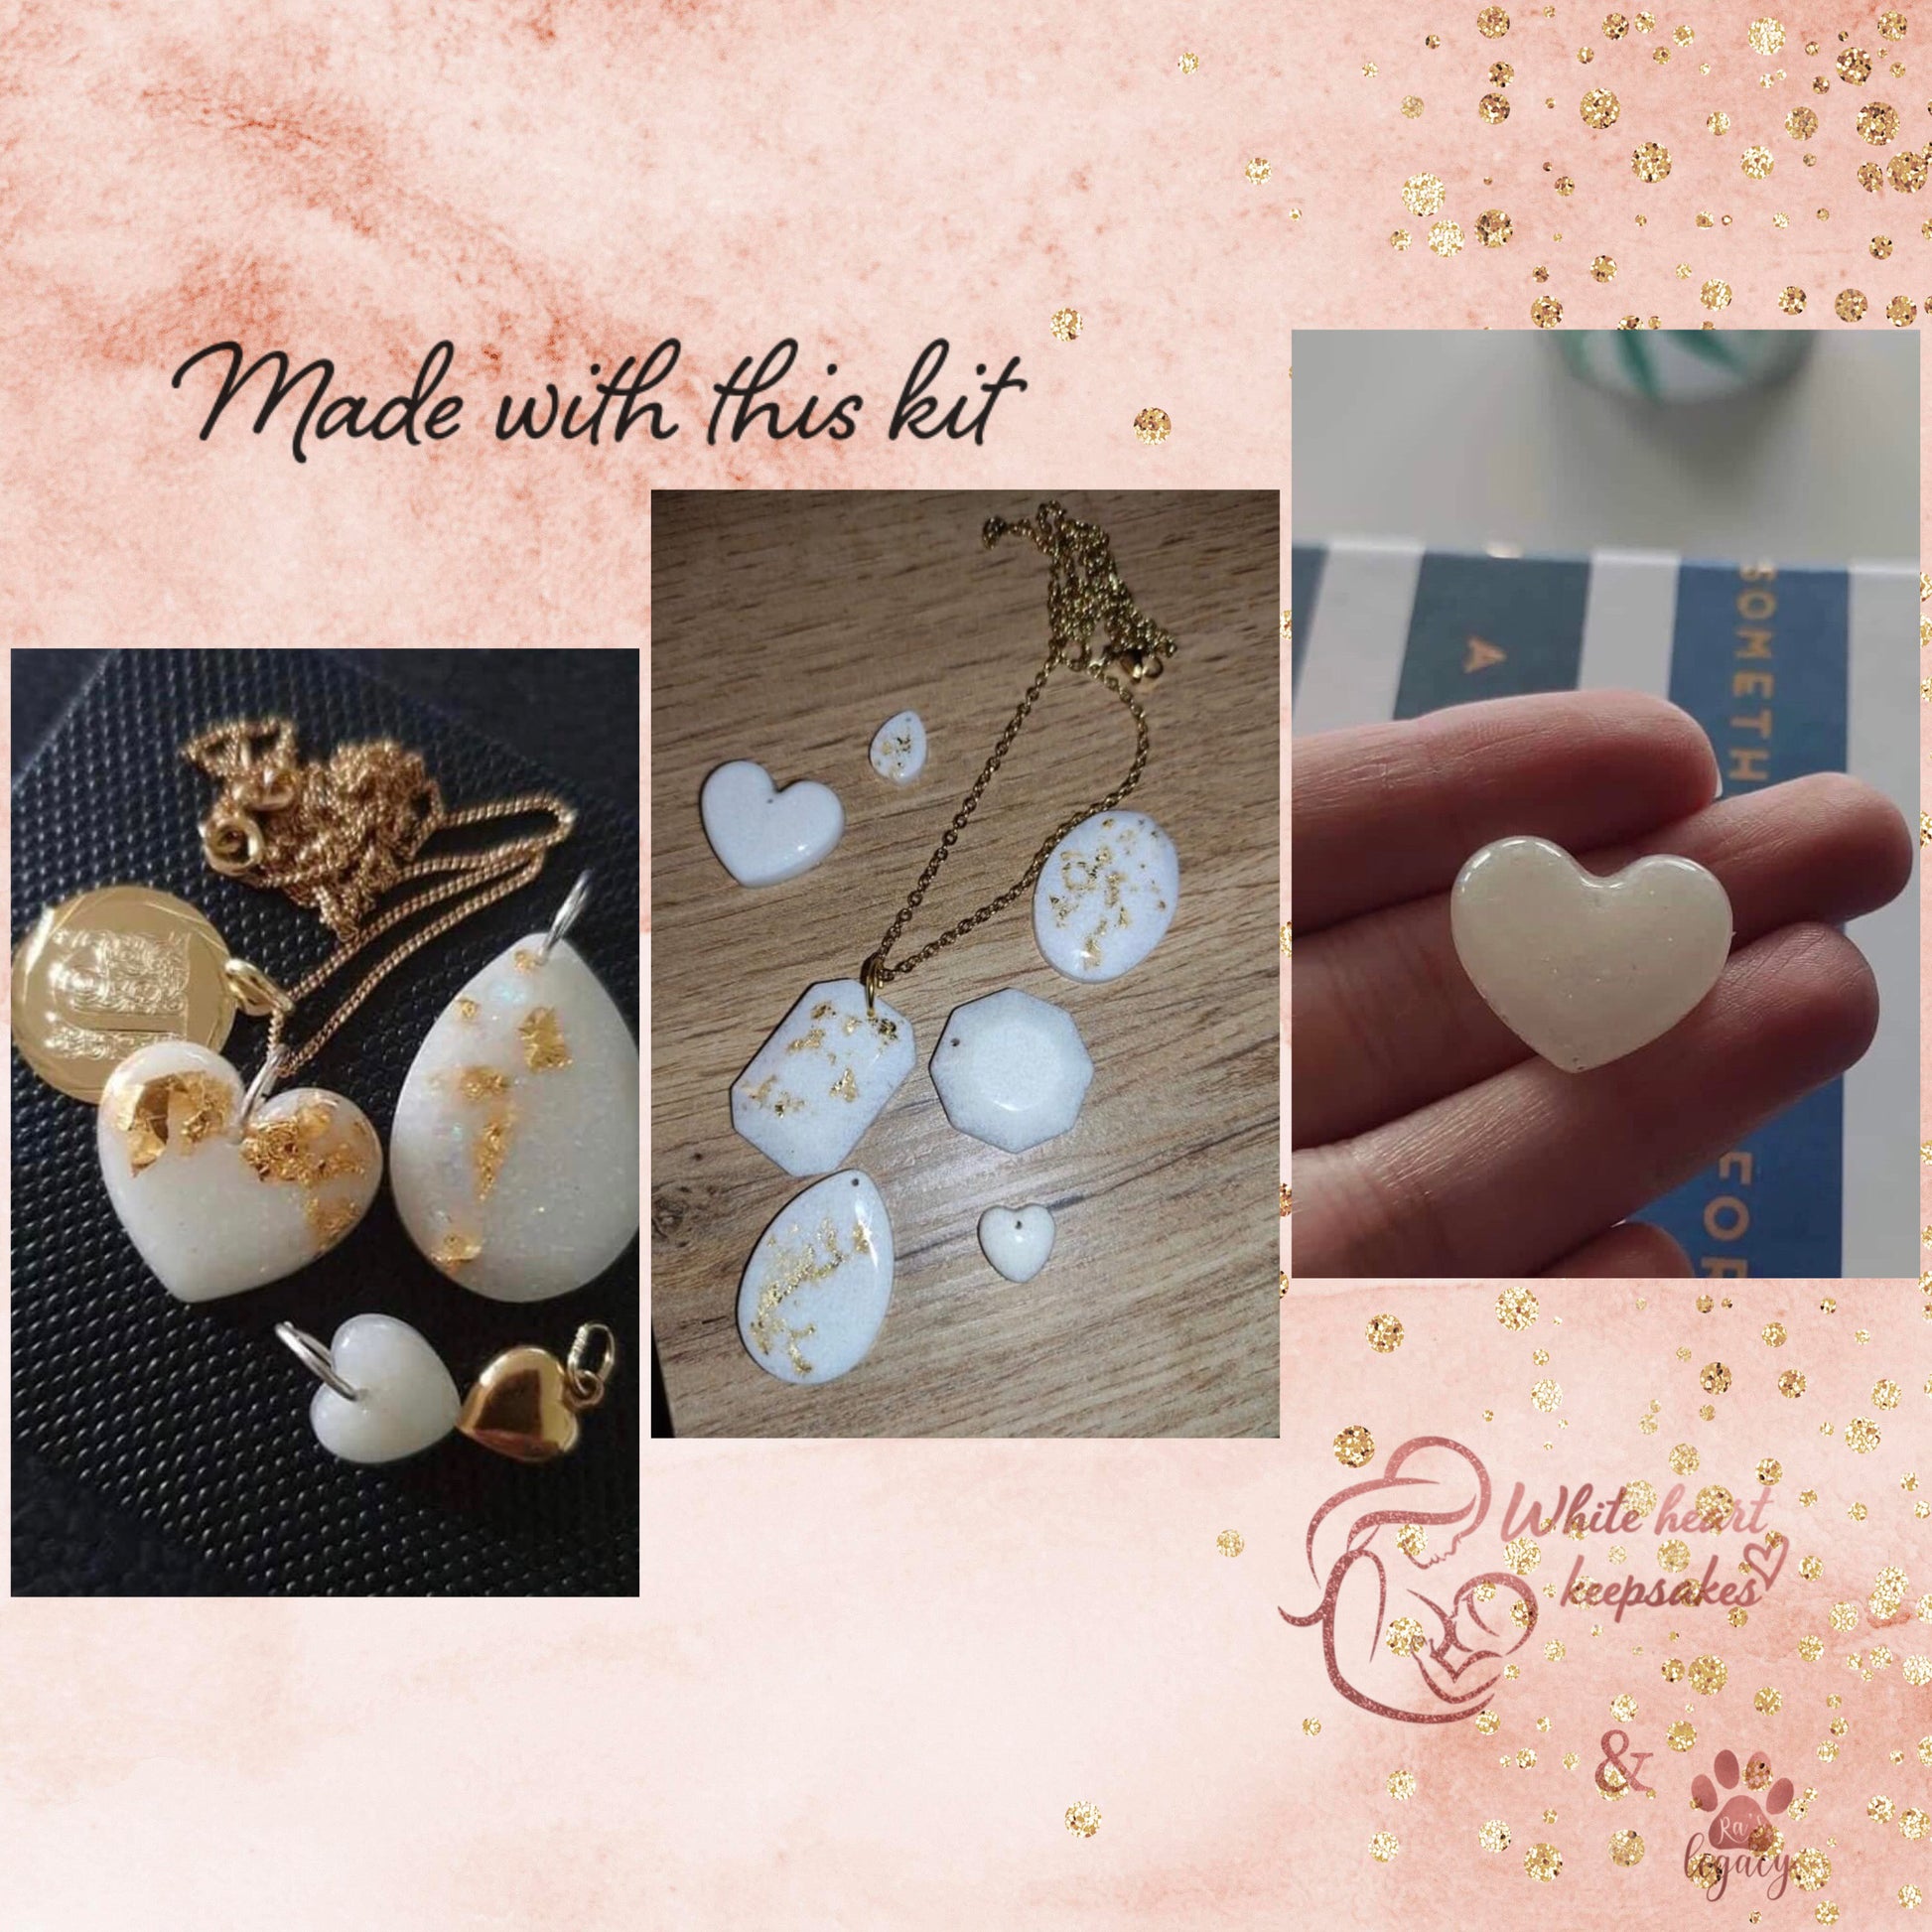 Basic DIY breastmilk jewellery kit stainless steel / golden shade – White  heart keepsakes